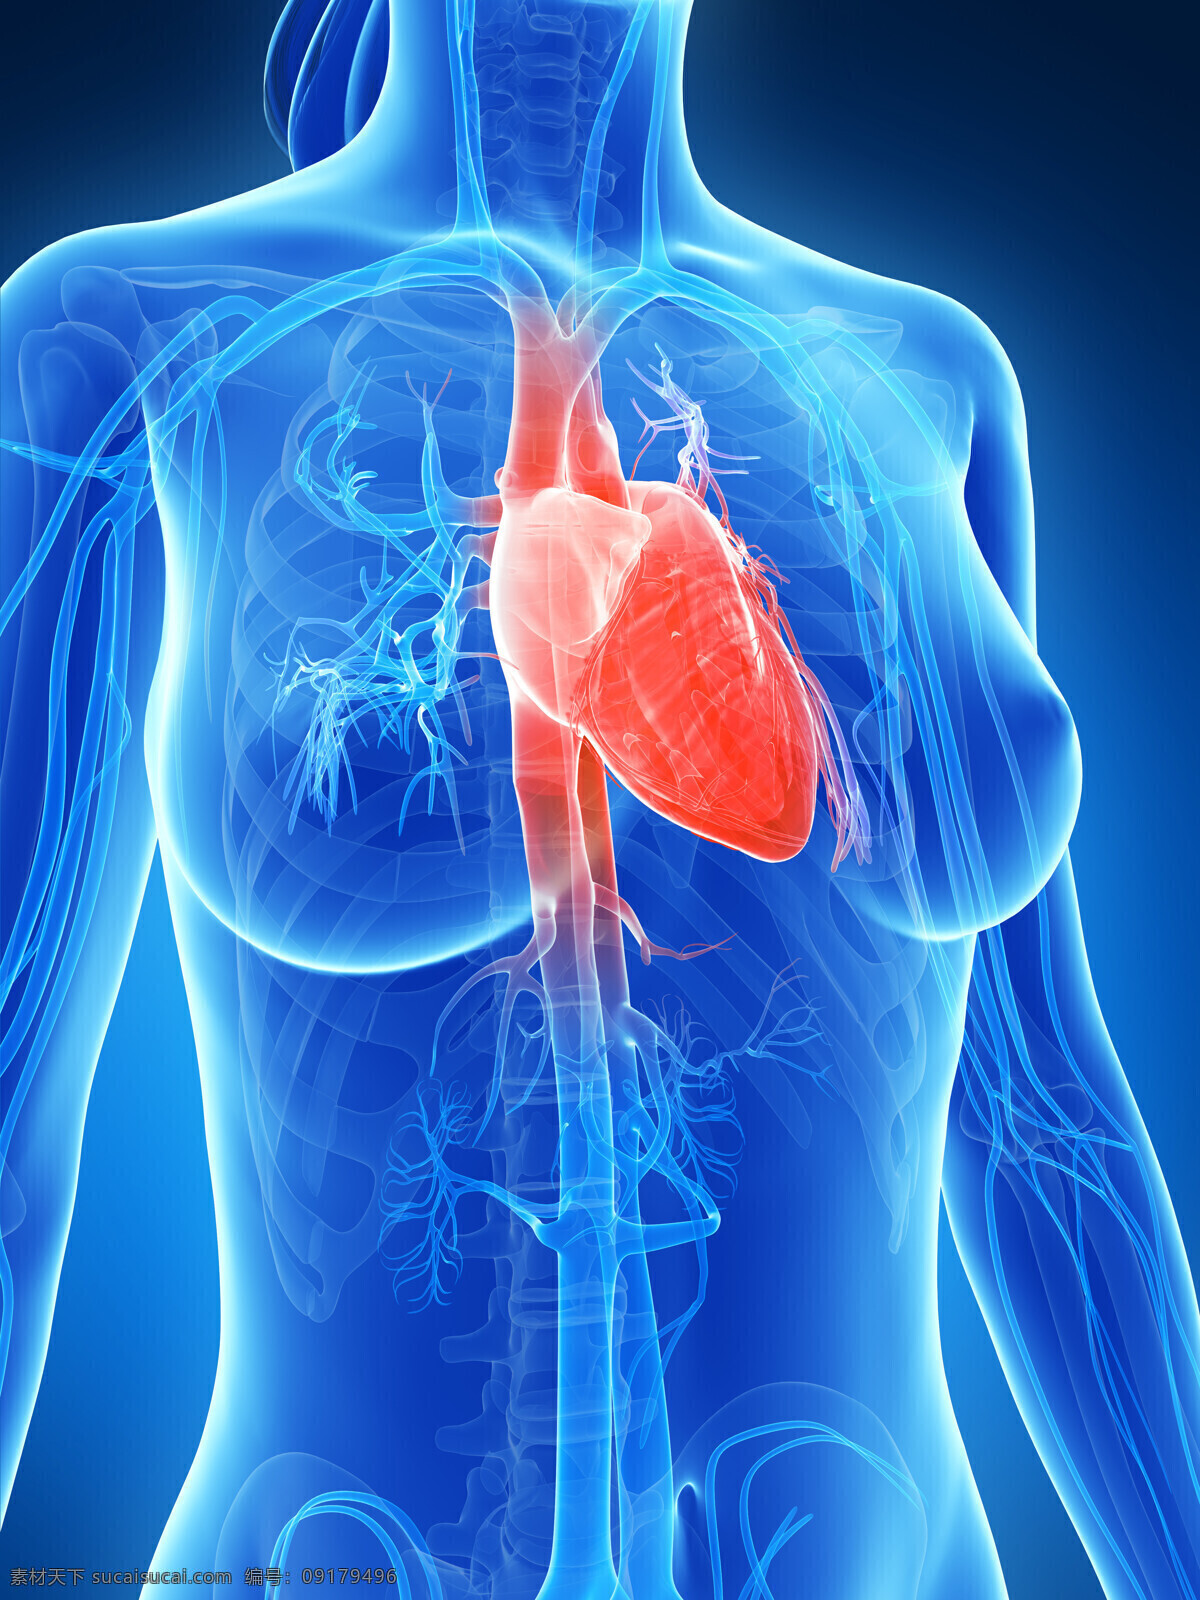 心脏 器官 心脏器官 心脏血管 人体器官 人体器官组织 人体医学 医疗护理 现代科技